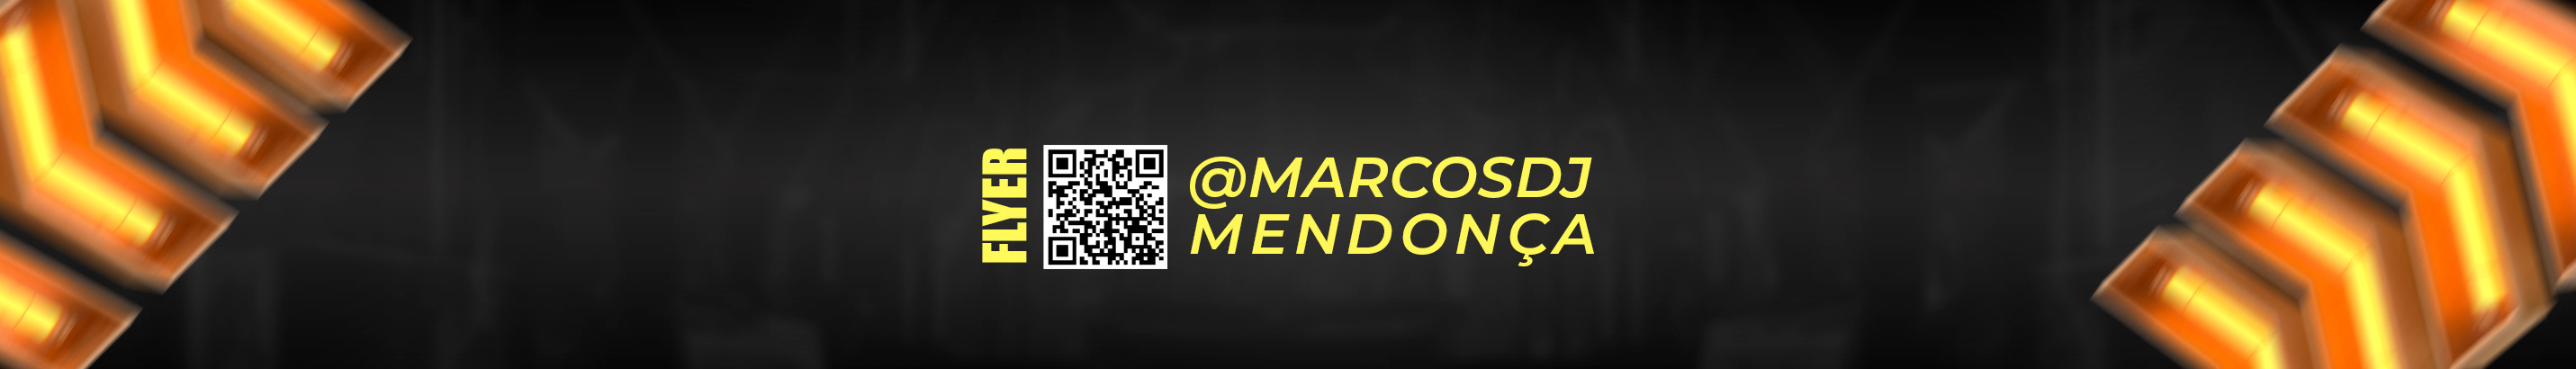 Marcos Mendonça's profile banner